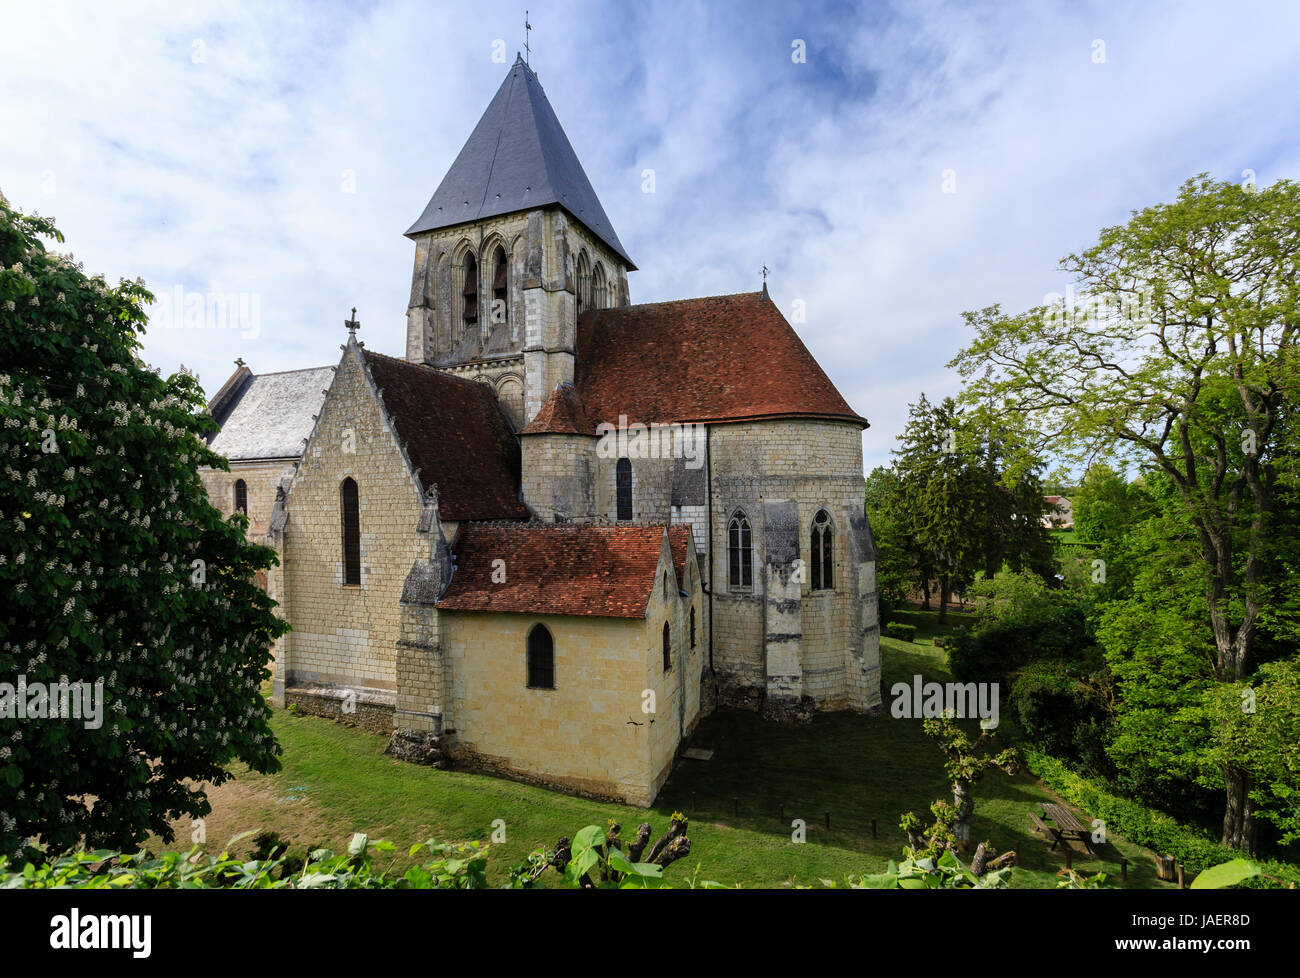 France, Loir et Cher, troo, Saint Martin church Stock Photo